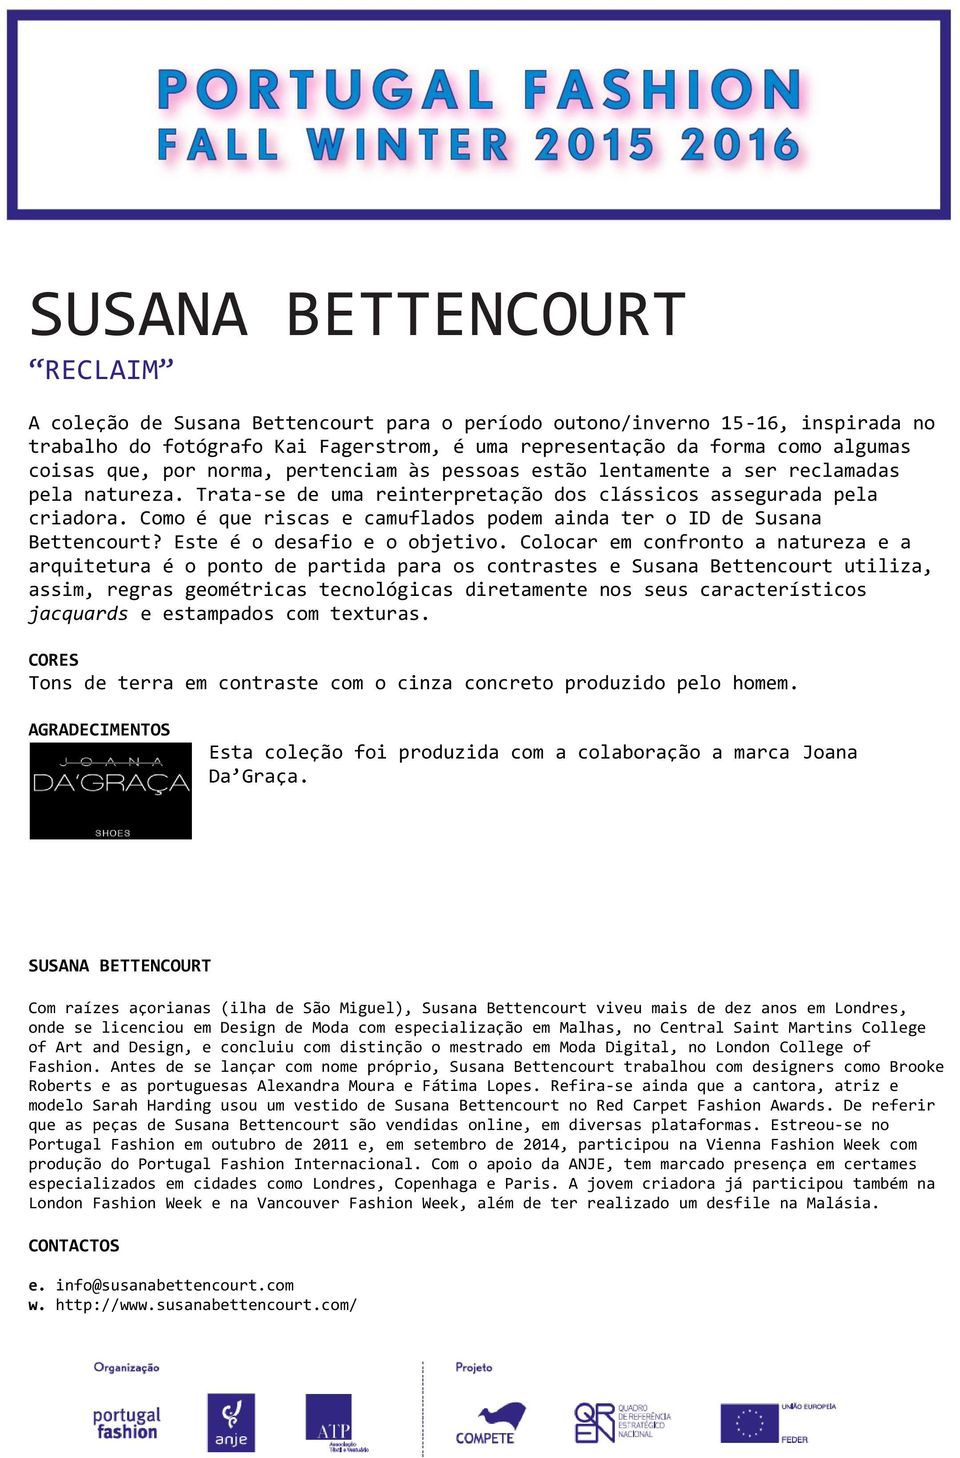 Como é que riscas e camuflados podem ainda ter o ID de Susana Bettencourt? Este é o desafio e o objetivo.